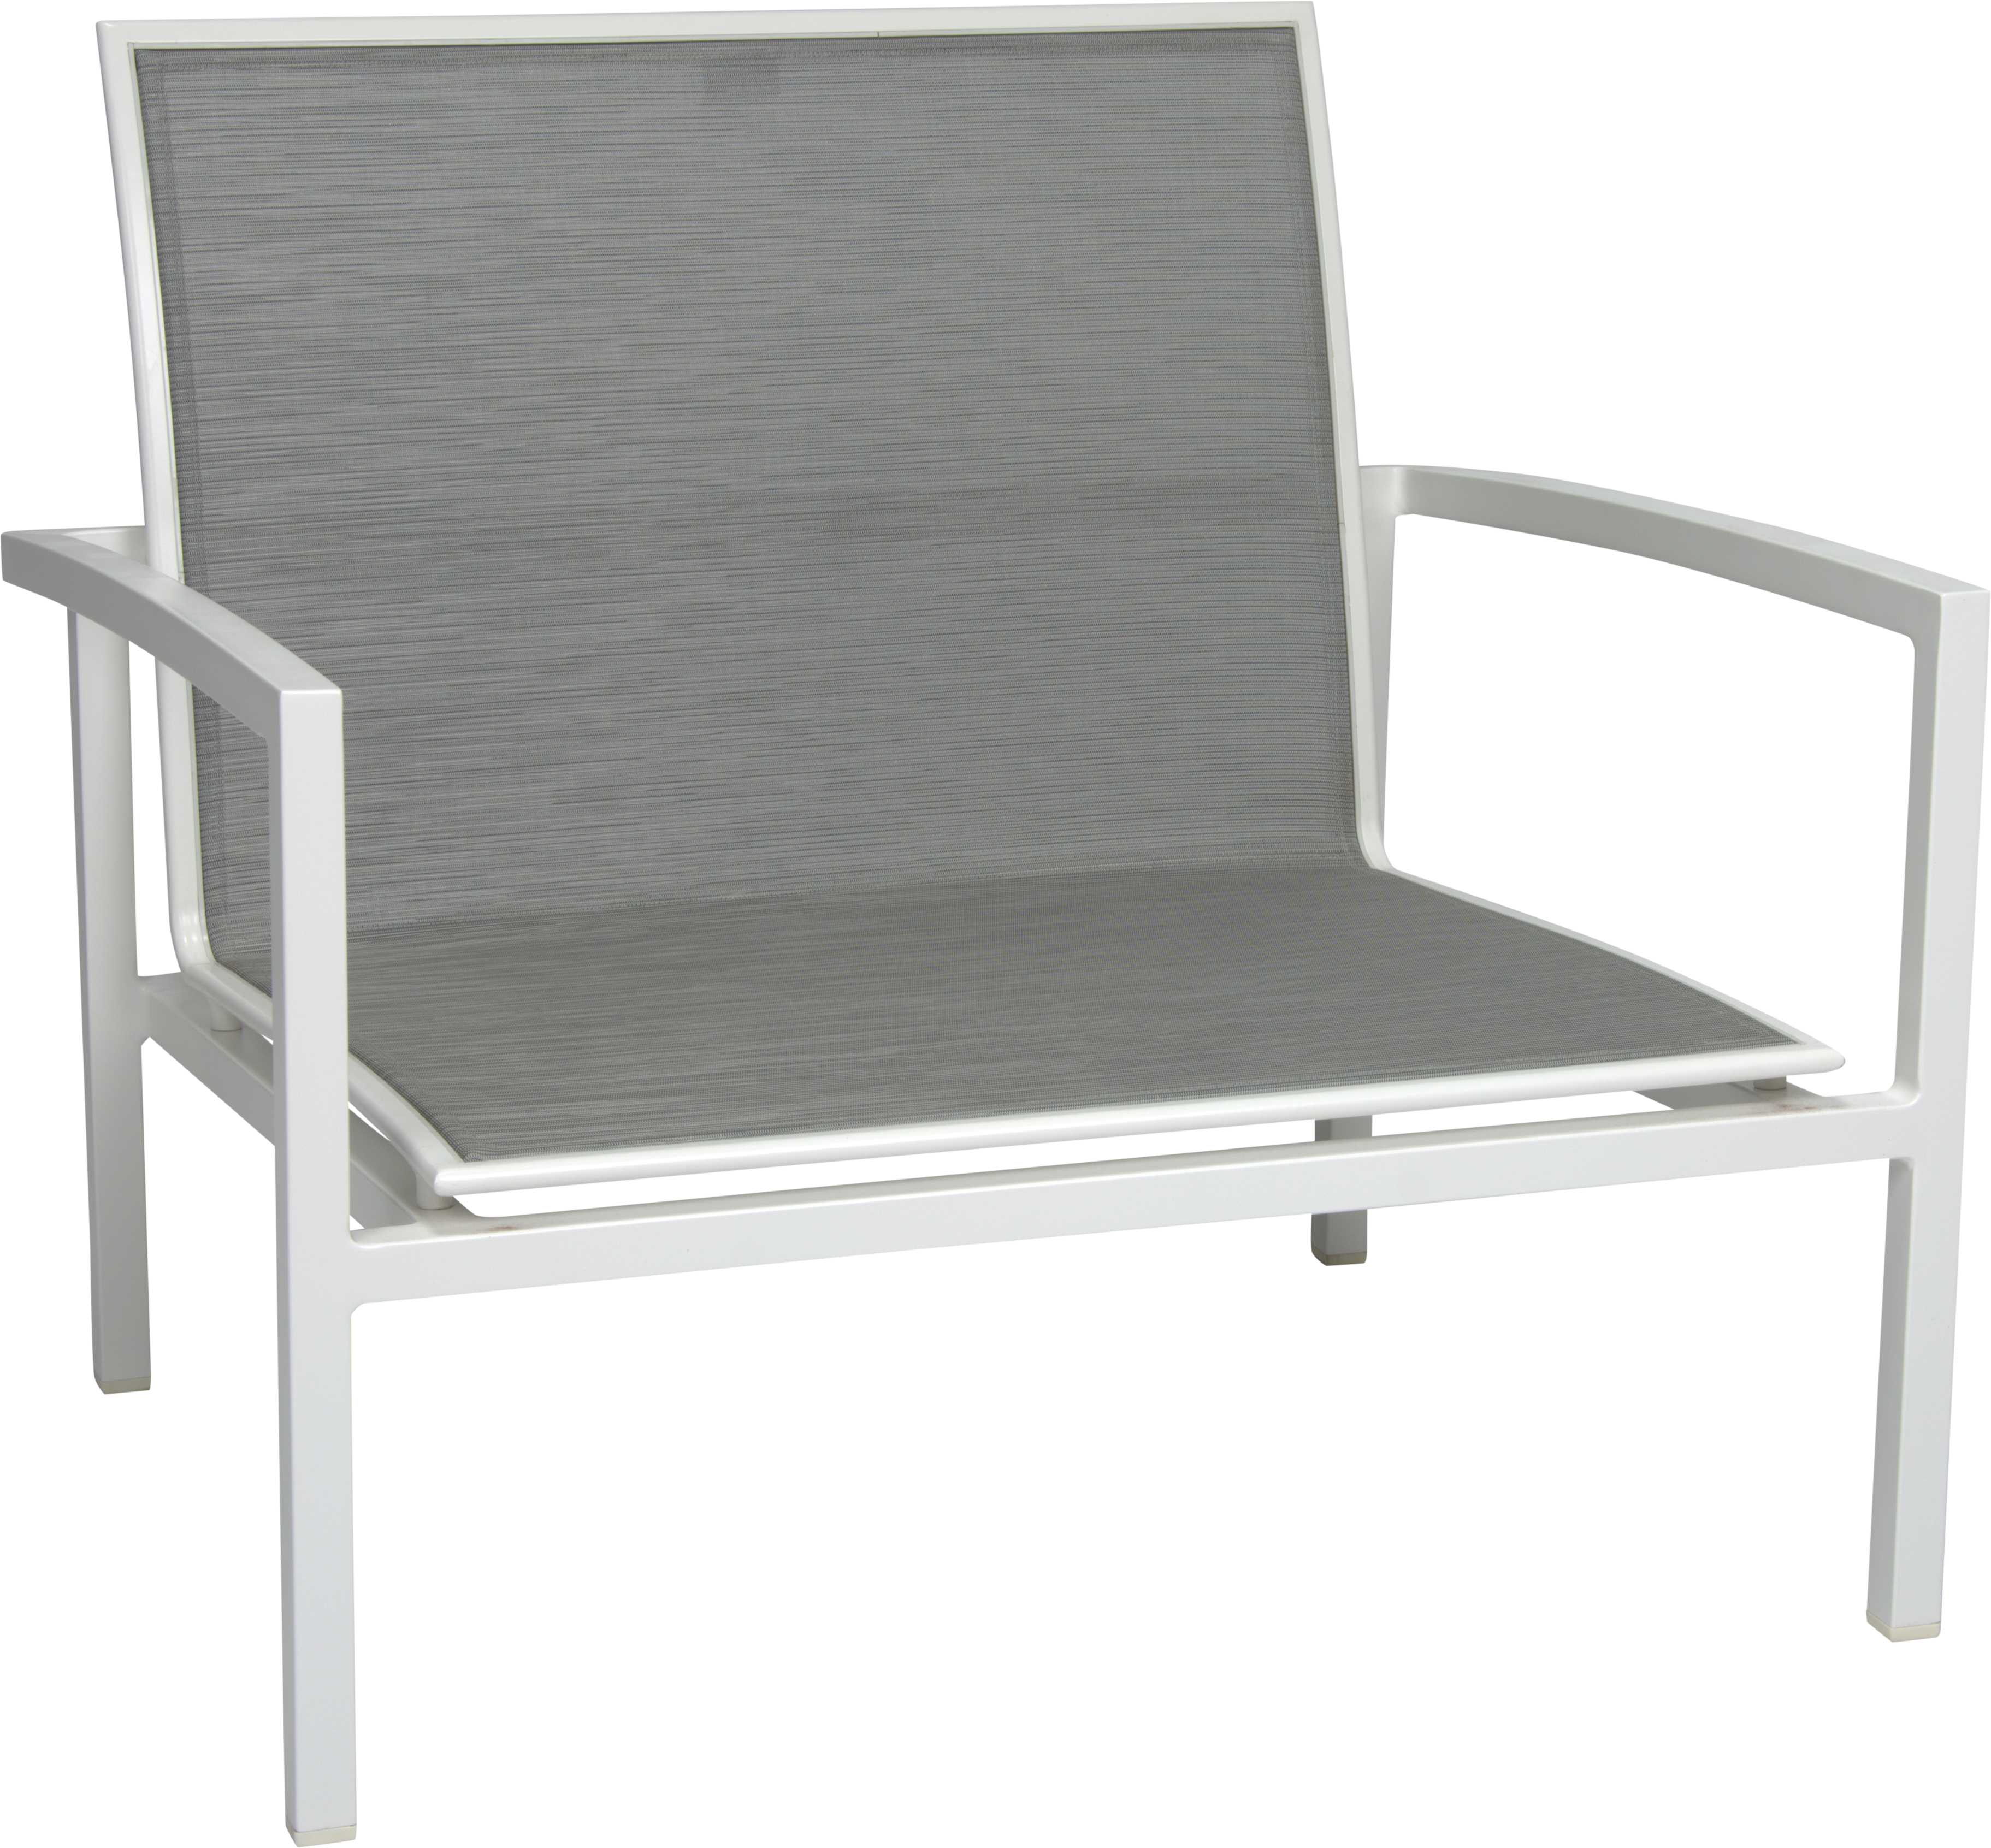 STERN Lounge-Sessel SKELBY Aluminium weiß mit Bezug Textilen silber